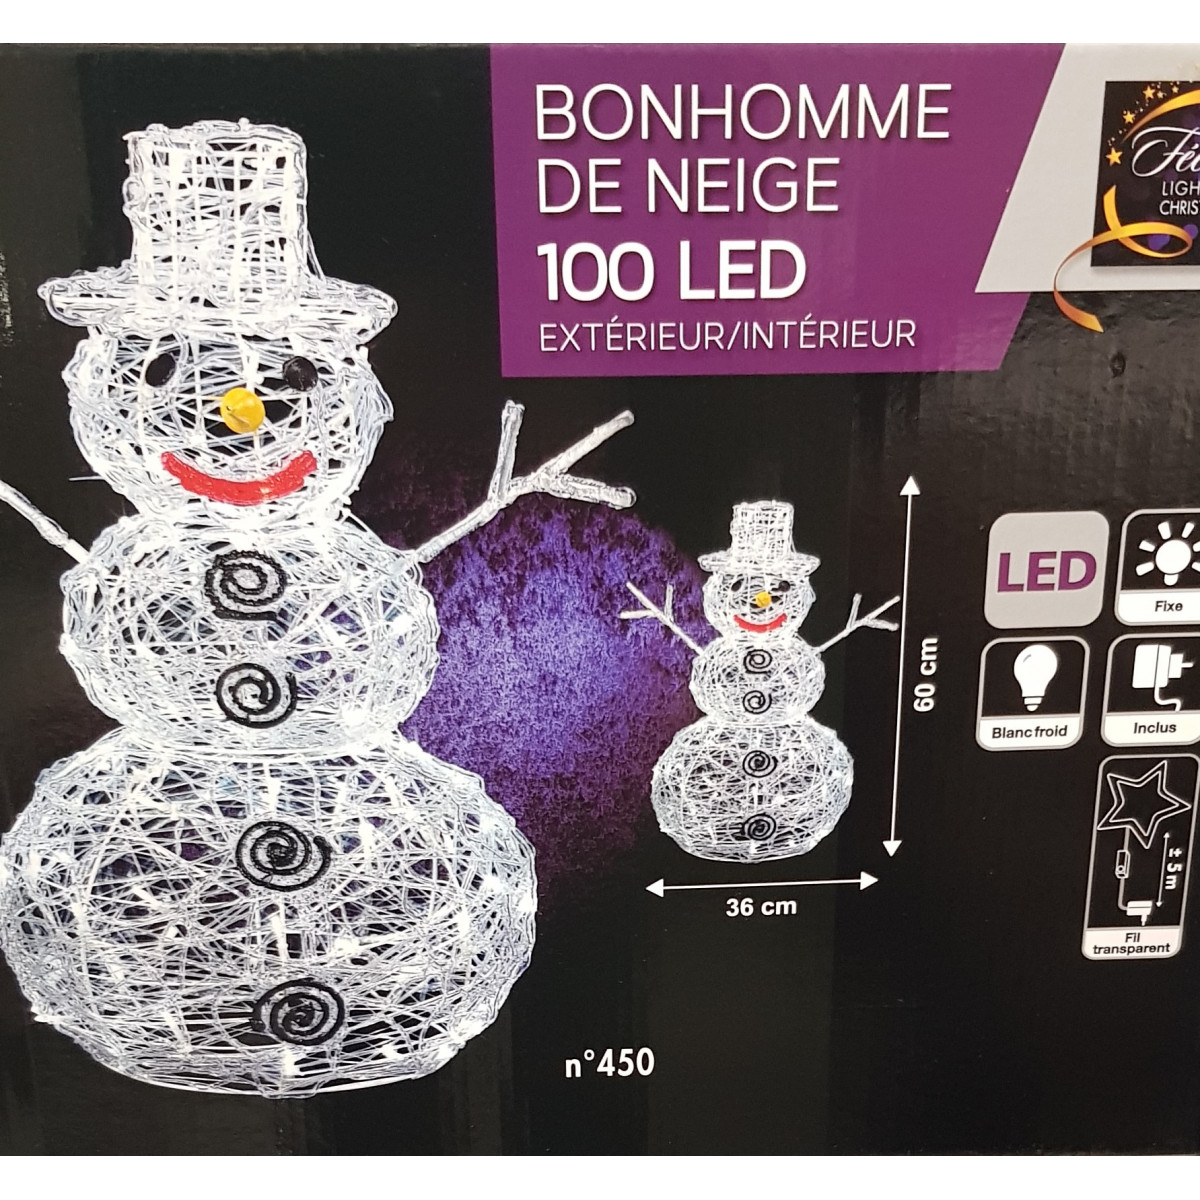 Autres articles lumineux, Luville Bonhomme de neige Lumineux 100 LED  Int./Ext. 120cm